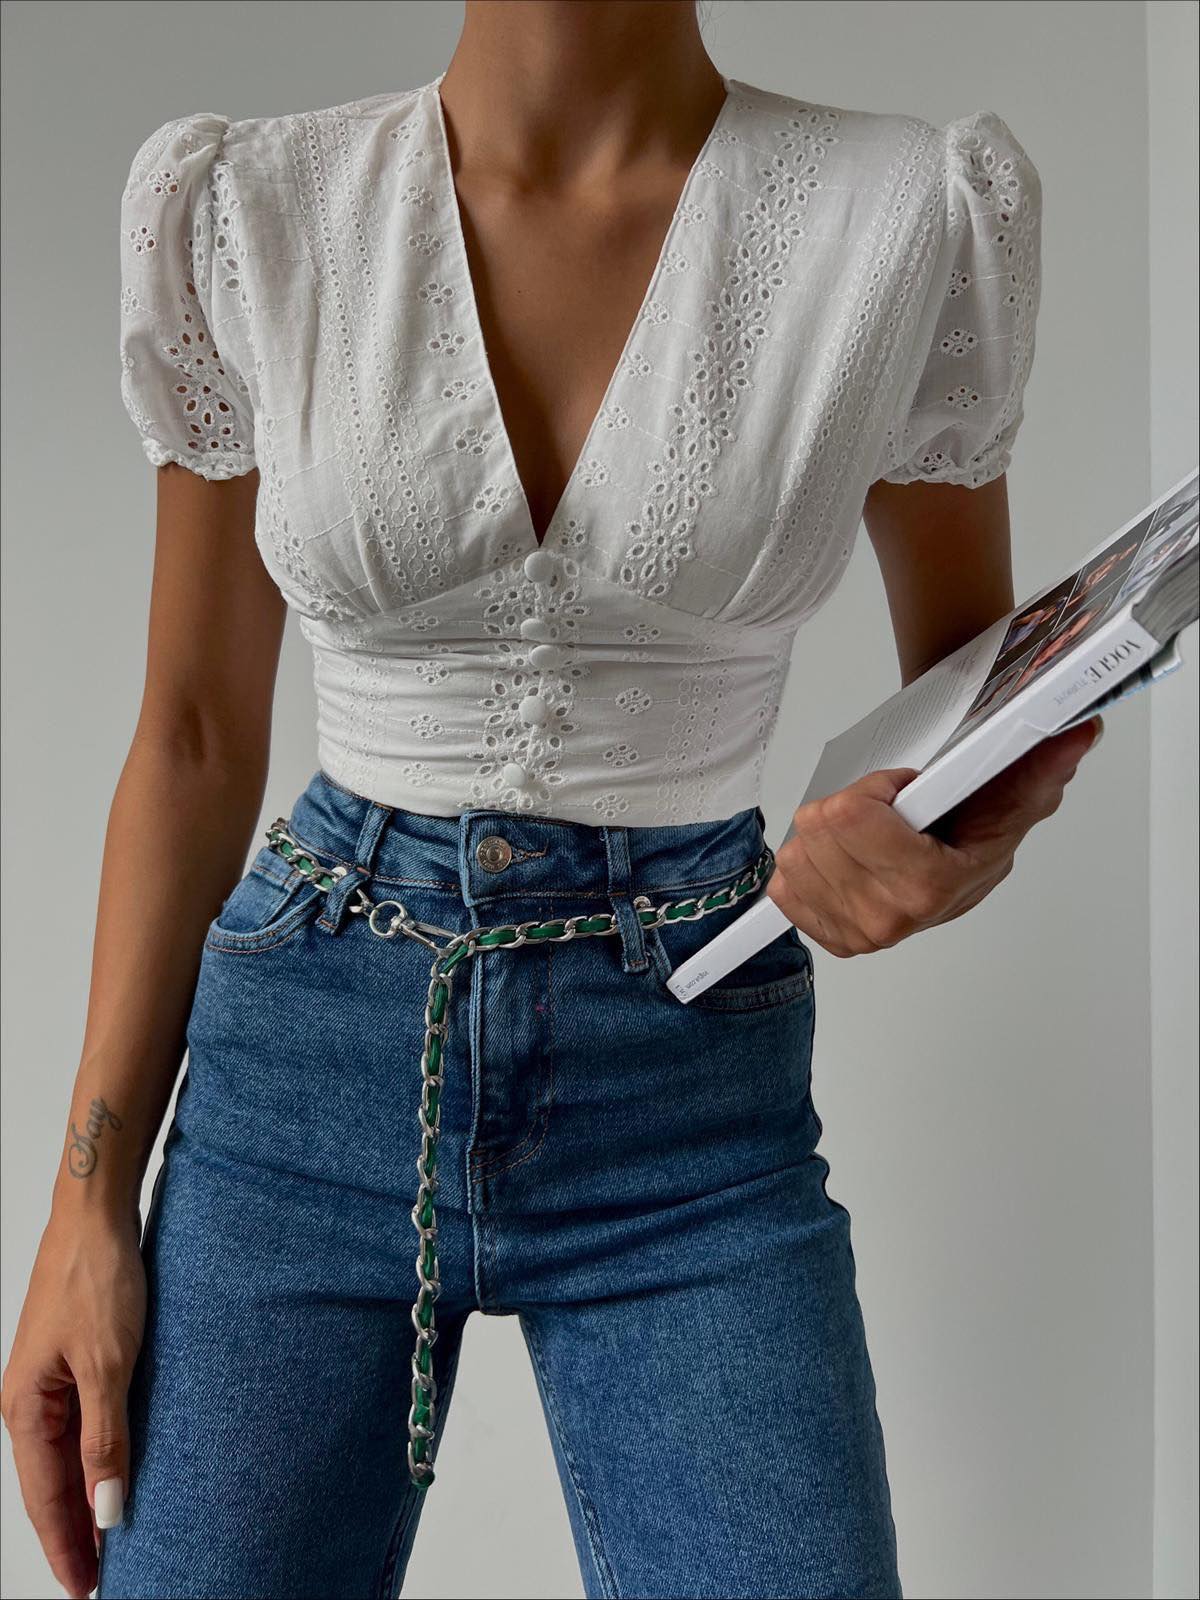 Дамска блуза DEFENA  https://bvseductive.com/products/дамска-блуза-defena  тренди дамска блуза в бял цвят&nbsp; със секси деколте моделът е с къса дължина и къси ръкави&nbsp; чудесен избор за модерна ежедневна визия